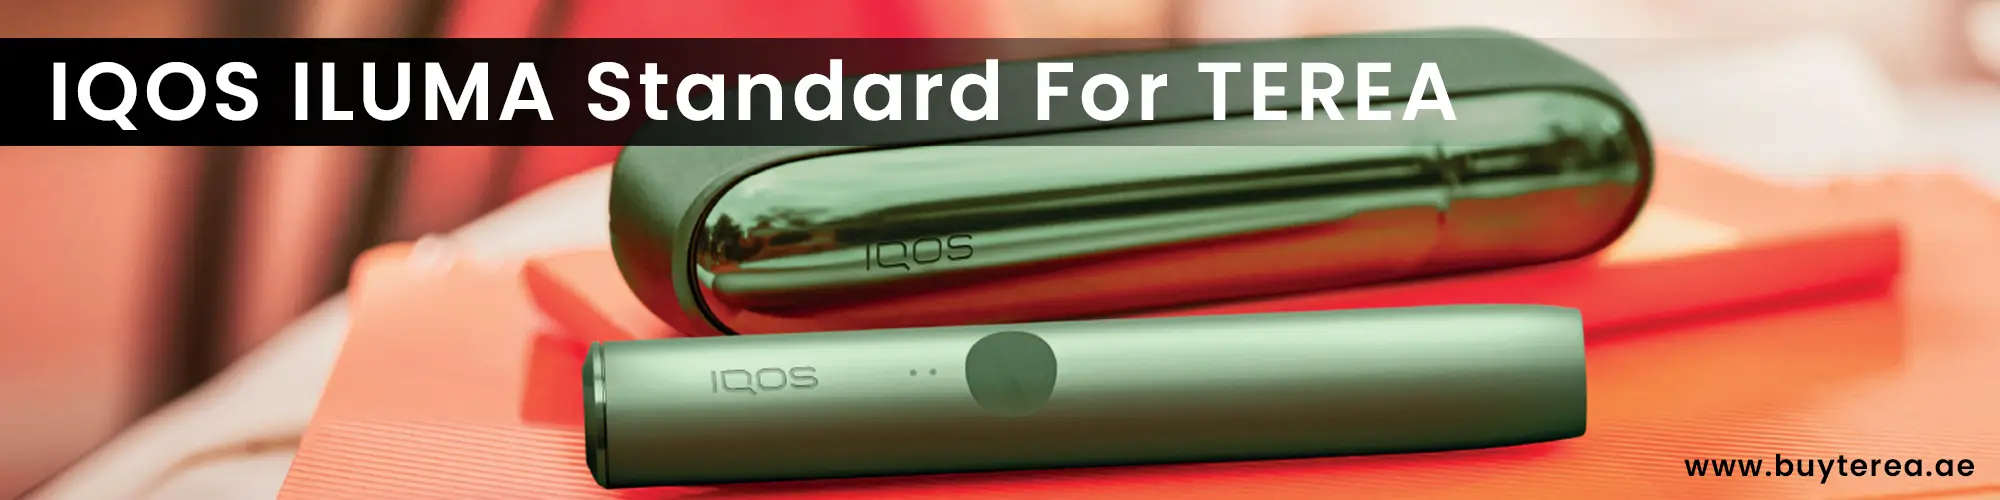 IQOS ILUMA Standard For Terea Sticks